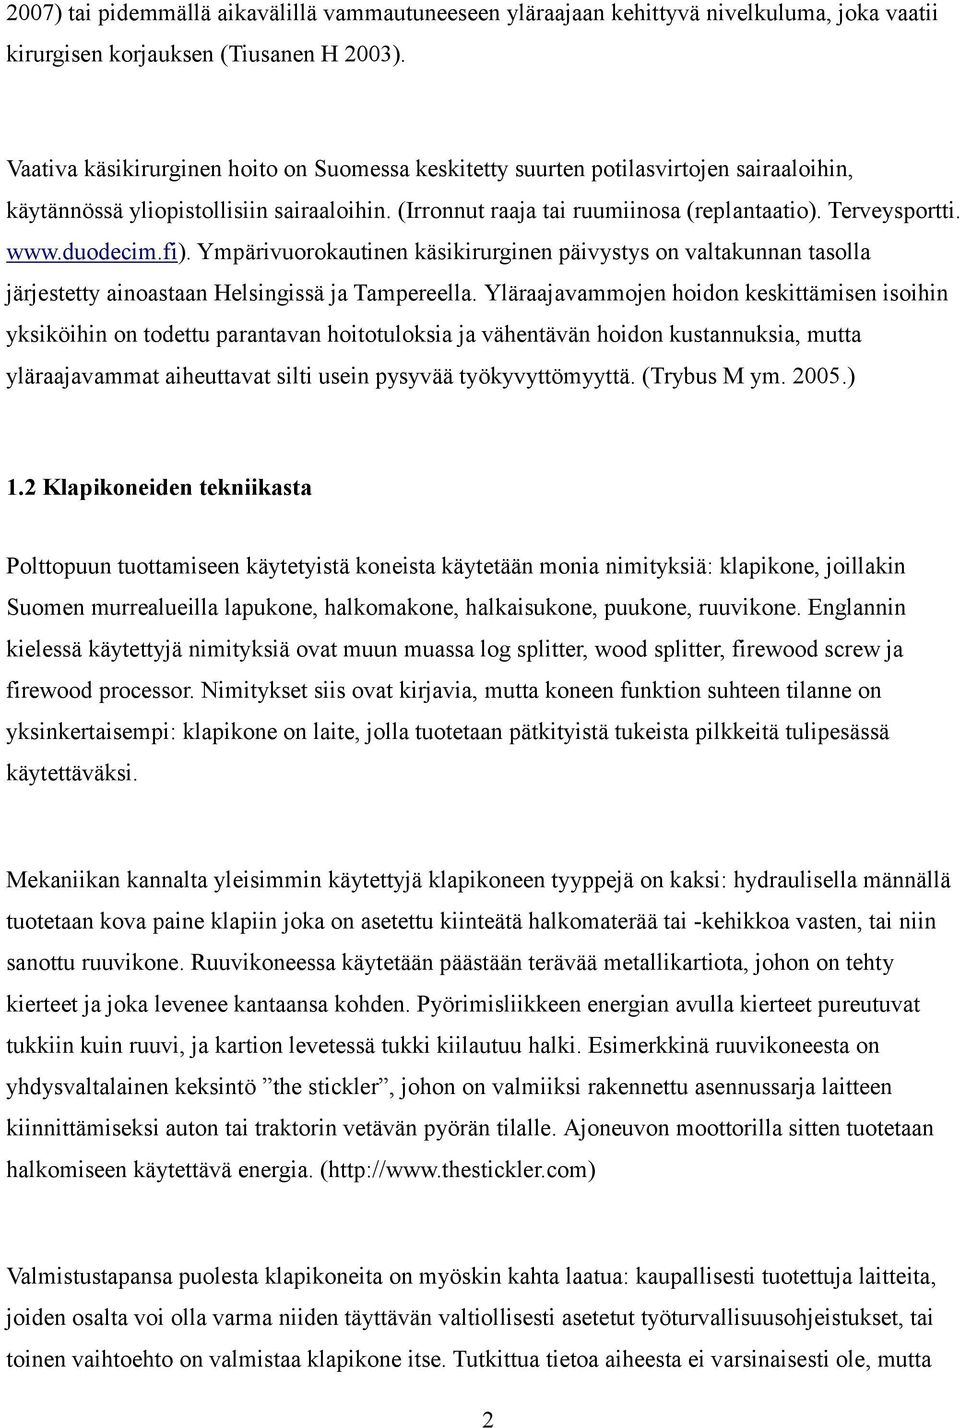 duodecim.fi). Ympärivuorokautinen käsikirurginen päivystys on valtakunnan tasolla järjestetty ainoastaan Helsingissä ja Tampereella.